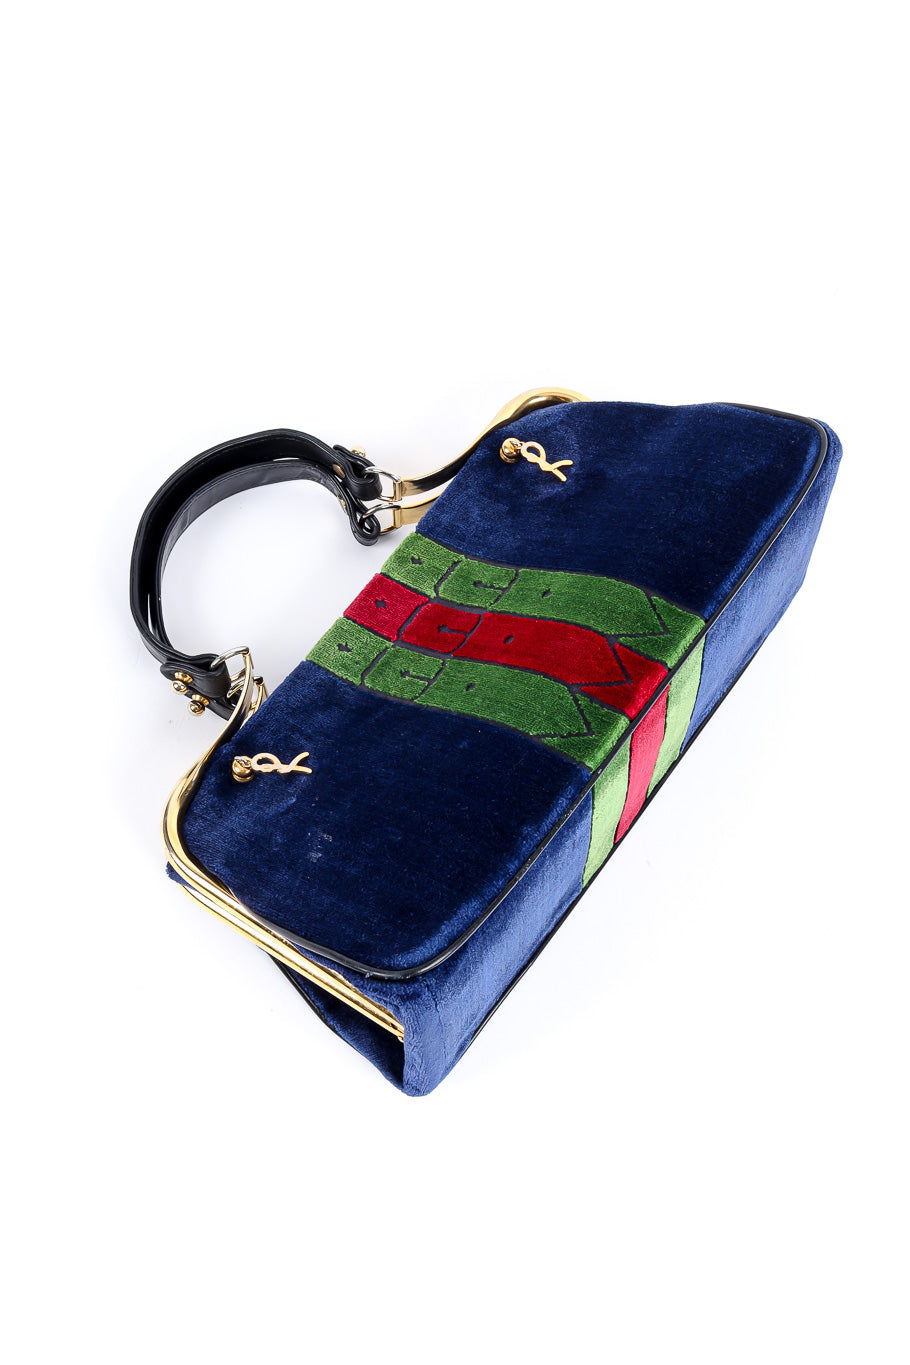 Roberta Di Camerino velvet stripe frame bag product shot @recessla